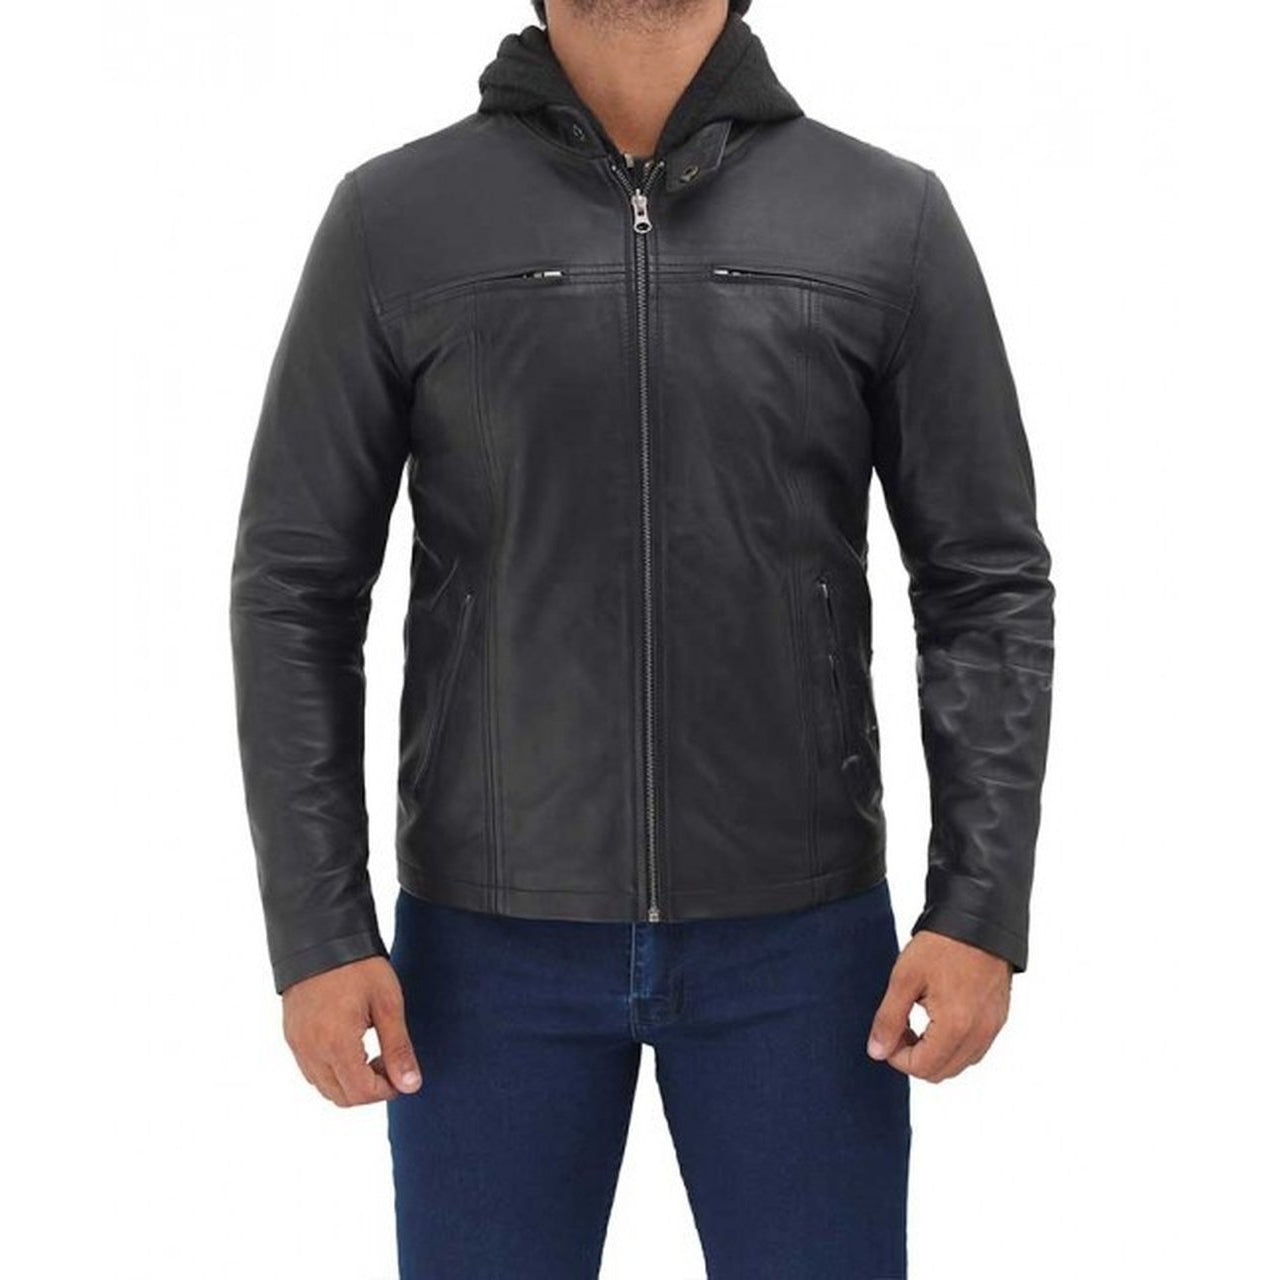 Black Bomber Hooded Leather Jacket - Leather Jacket